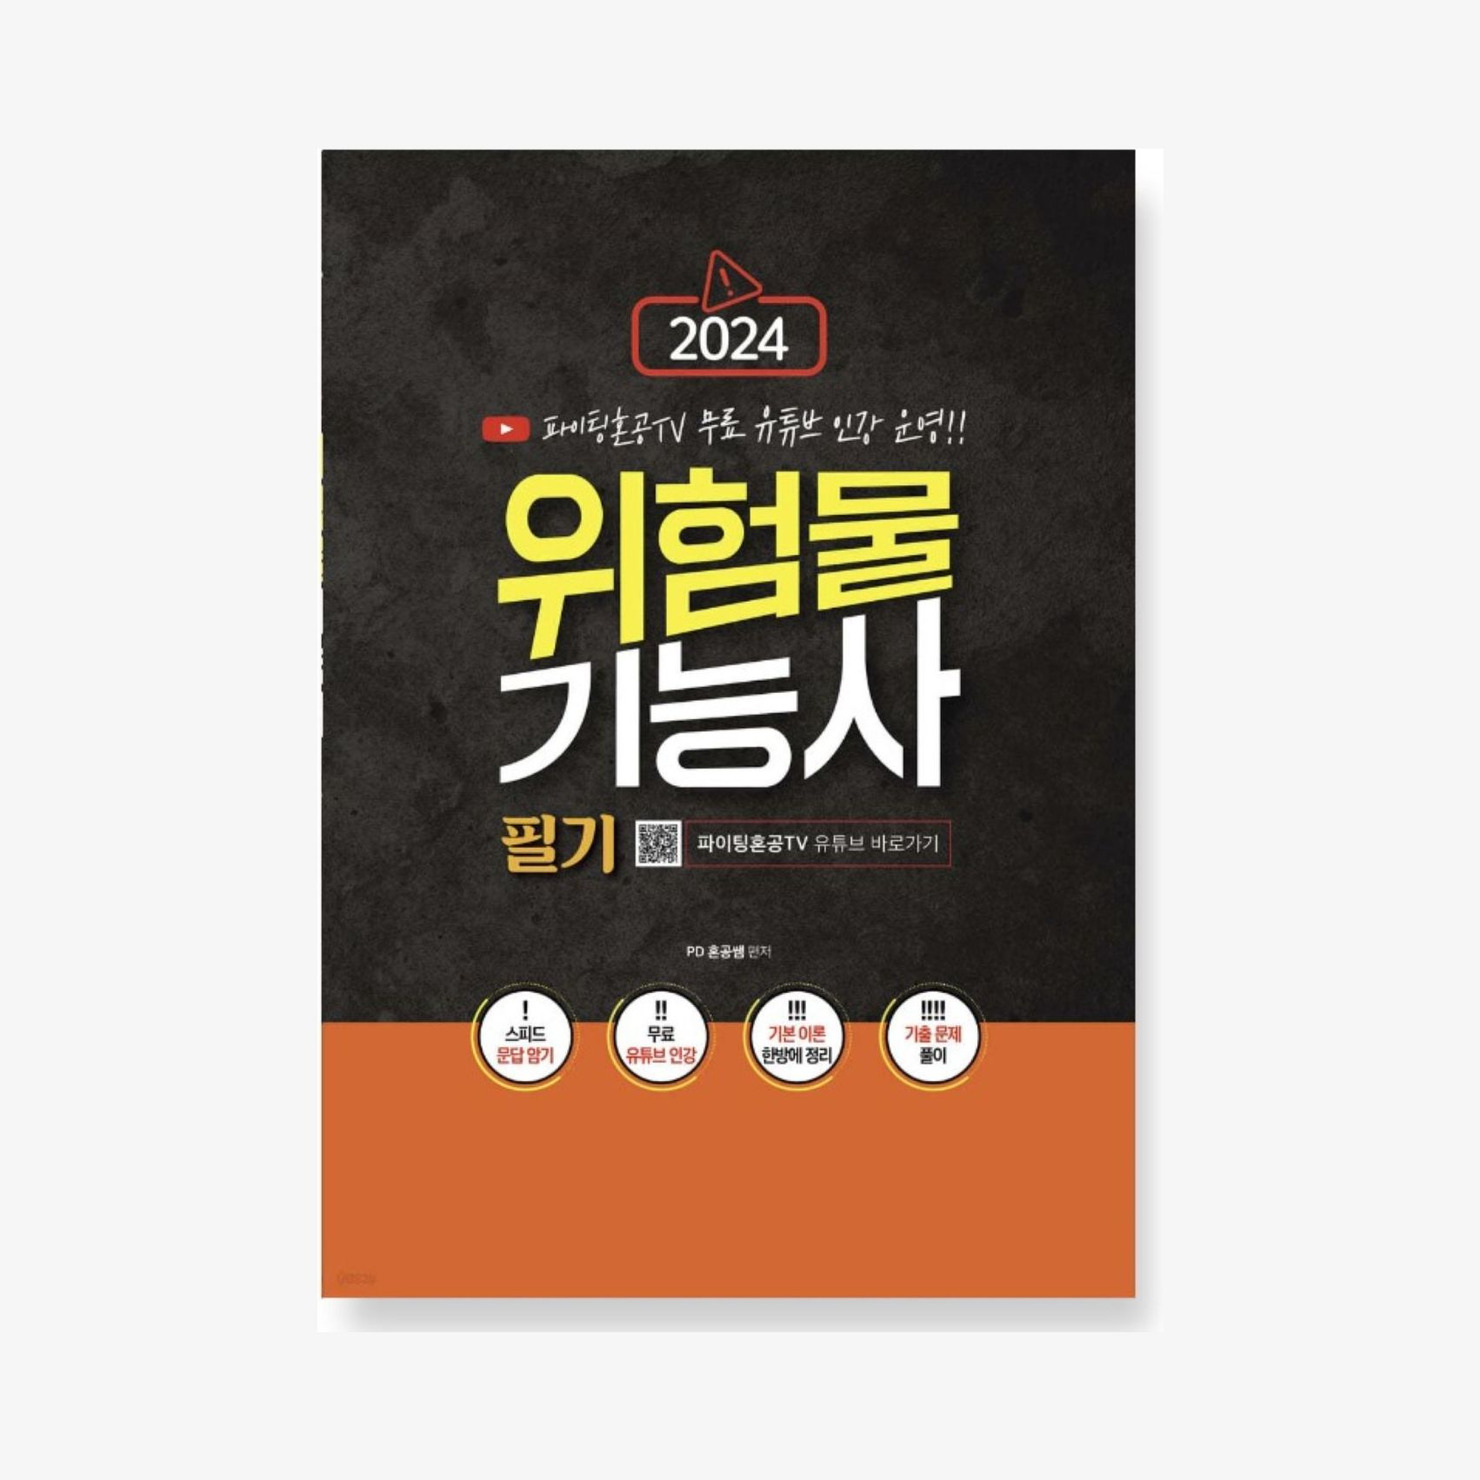 2024 파이팅혼공TV 위험물기능사 필기, 마플샵 굿즈